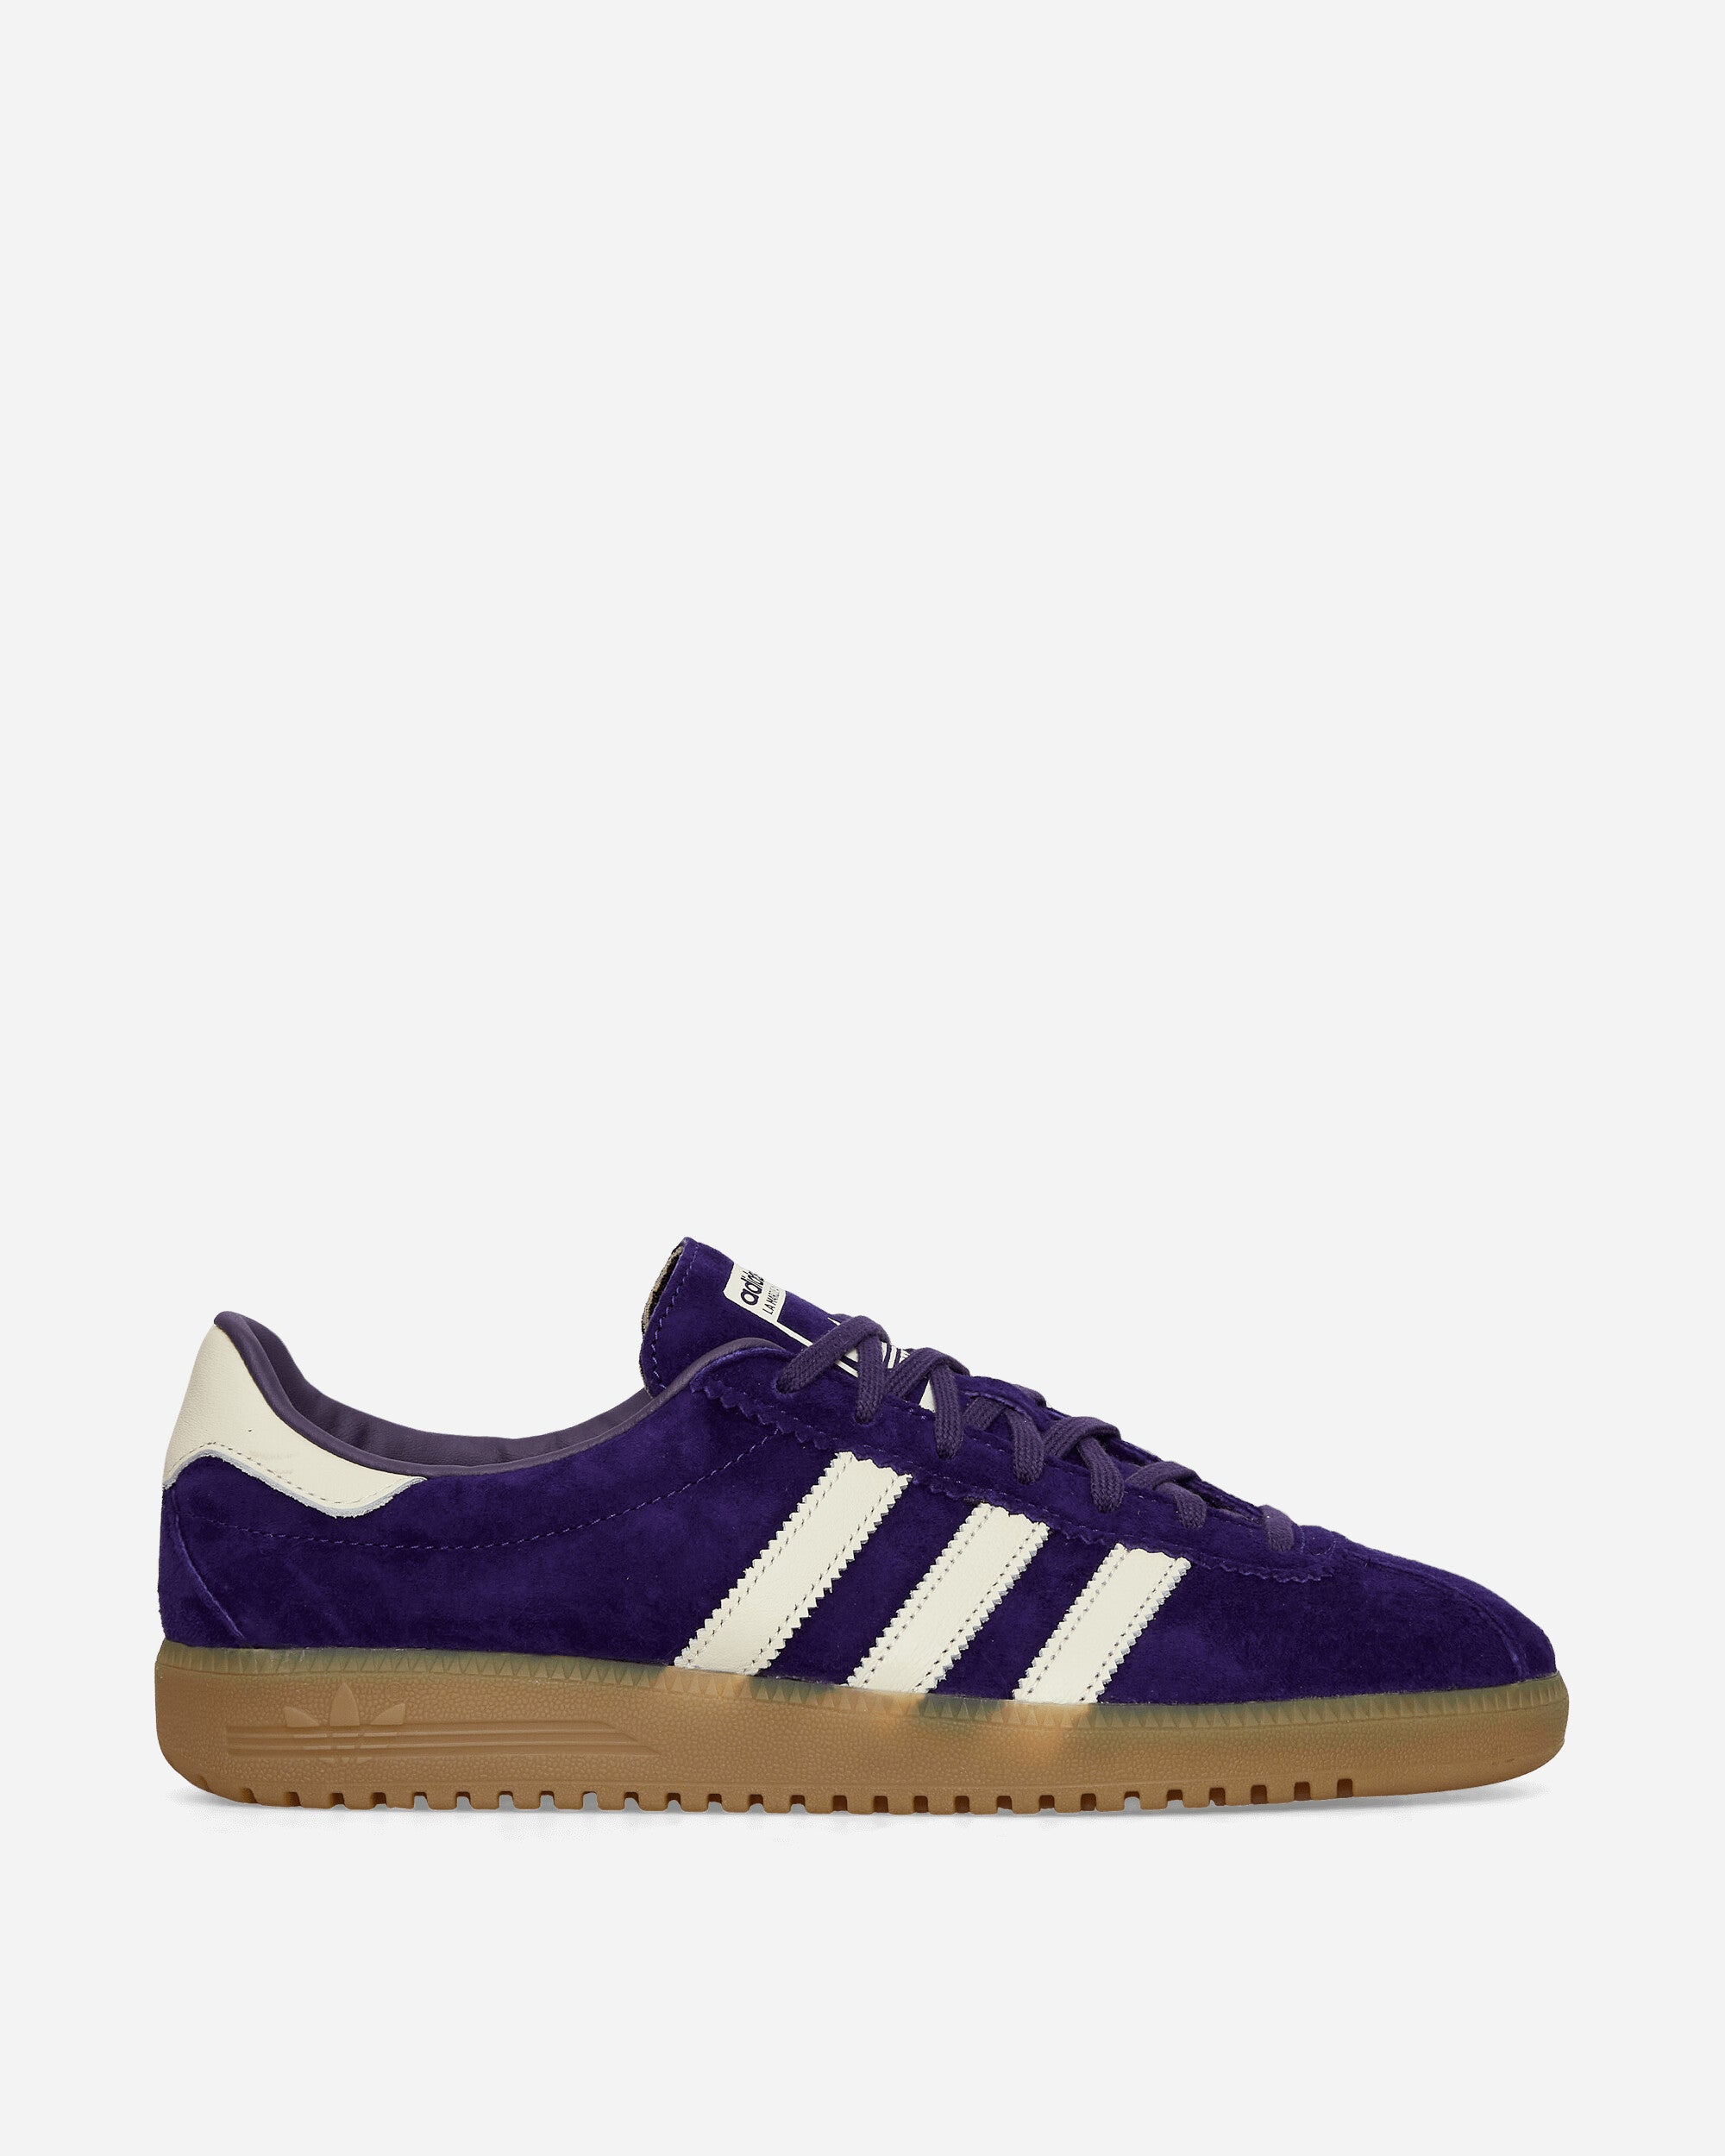 Bermuda Sneakers Purple / Cream White